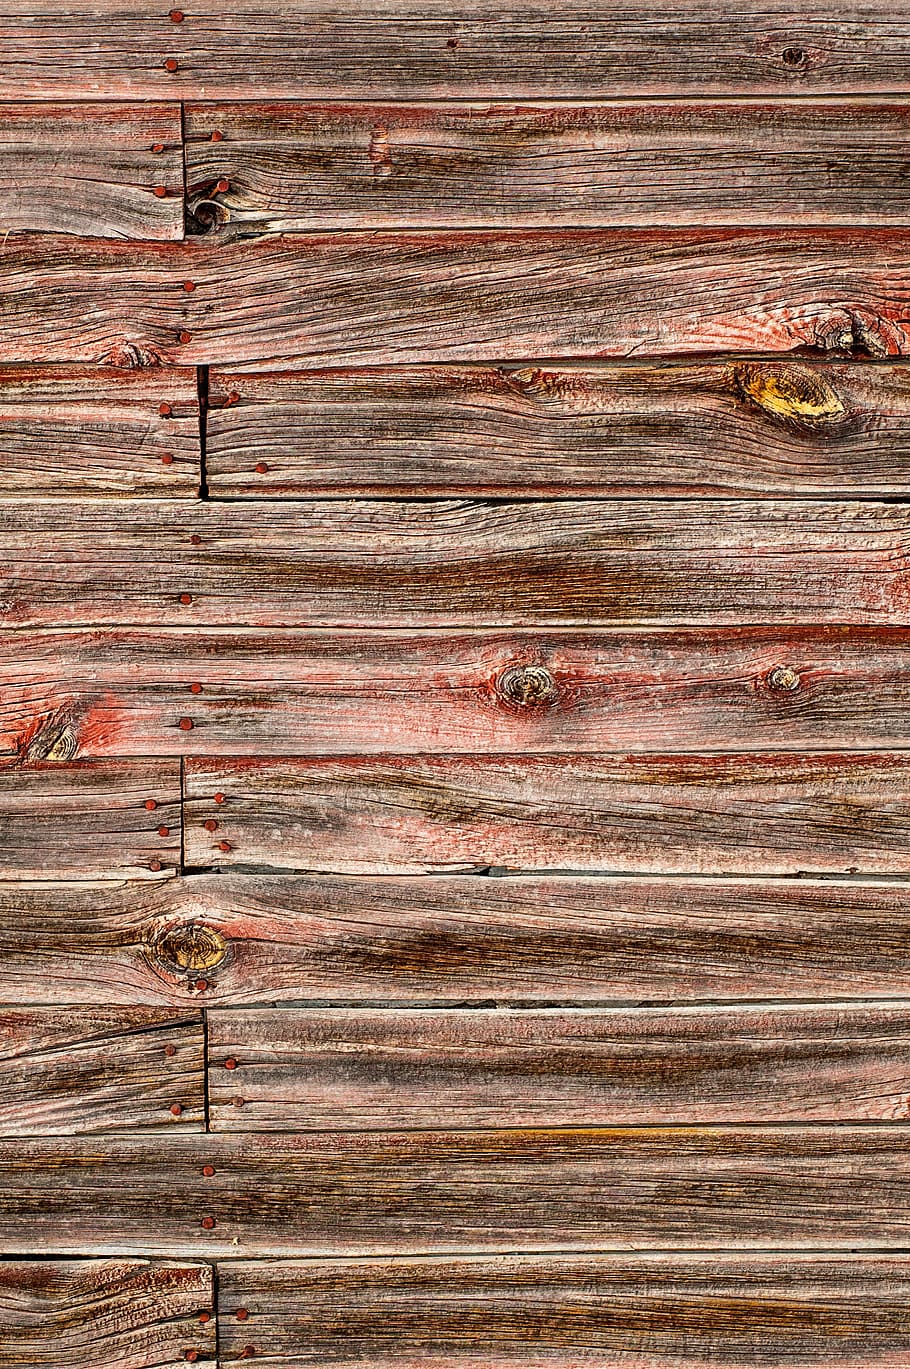 barn wood texture, red barn wood, wood background, wood, texture, background, barn, grunge, old, red